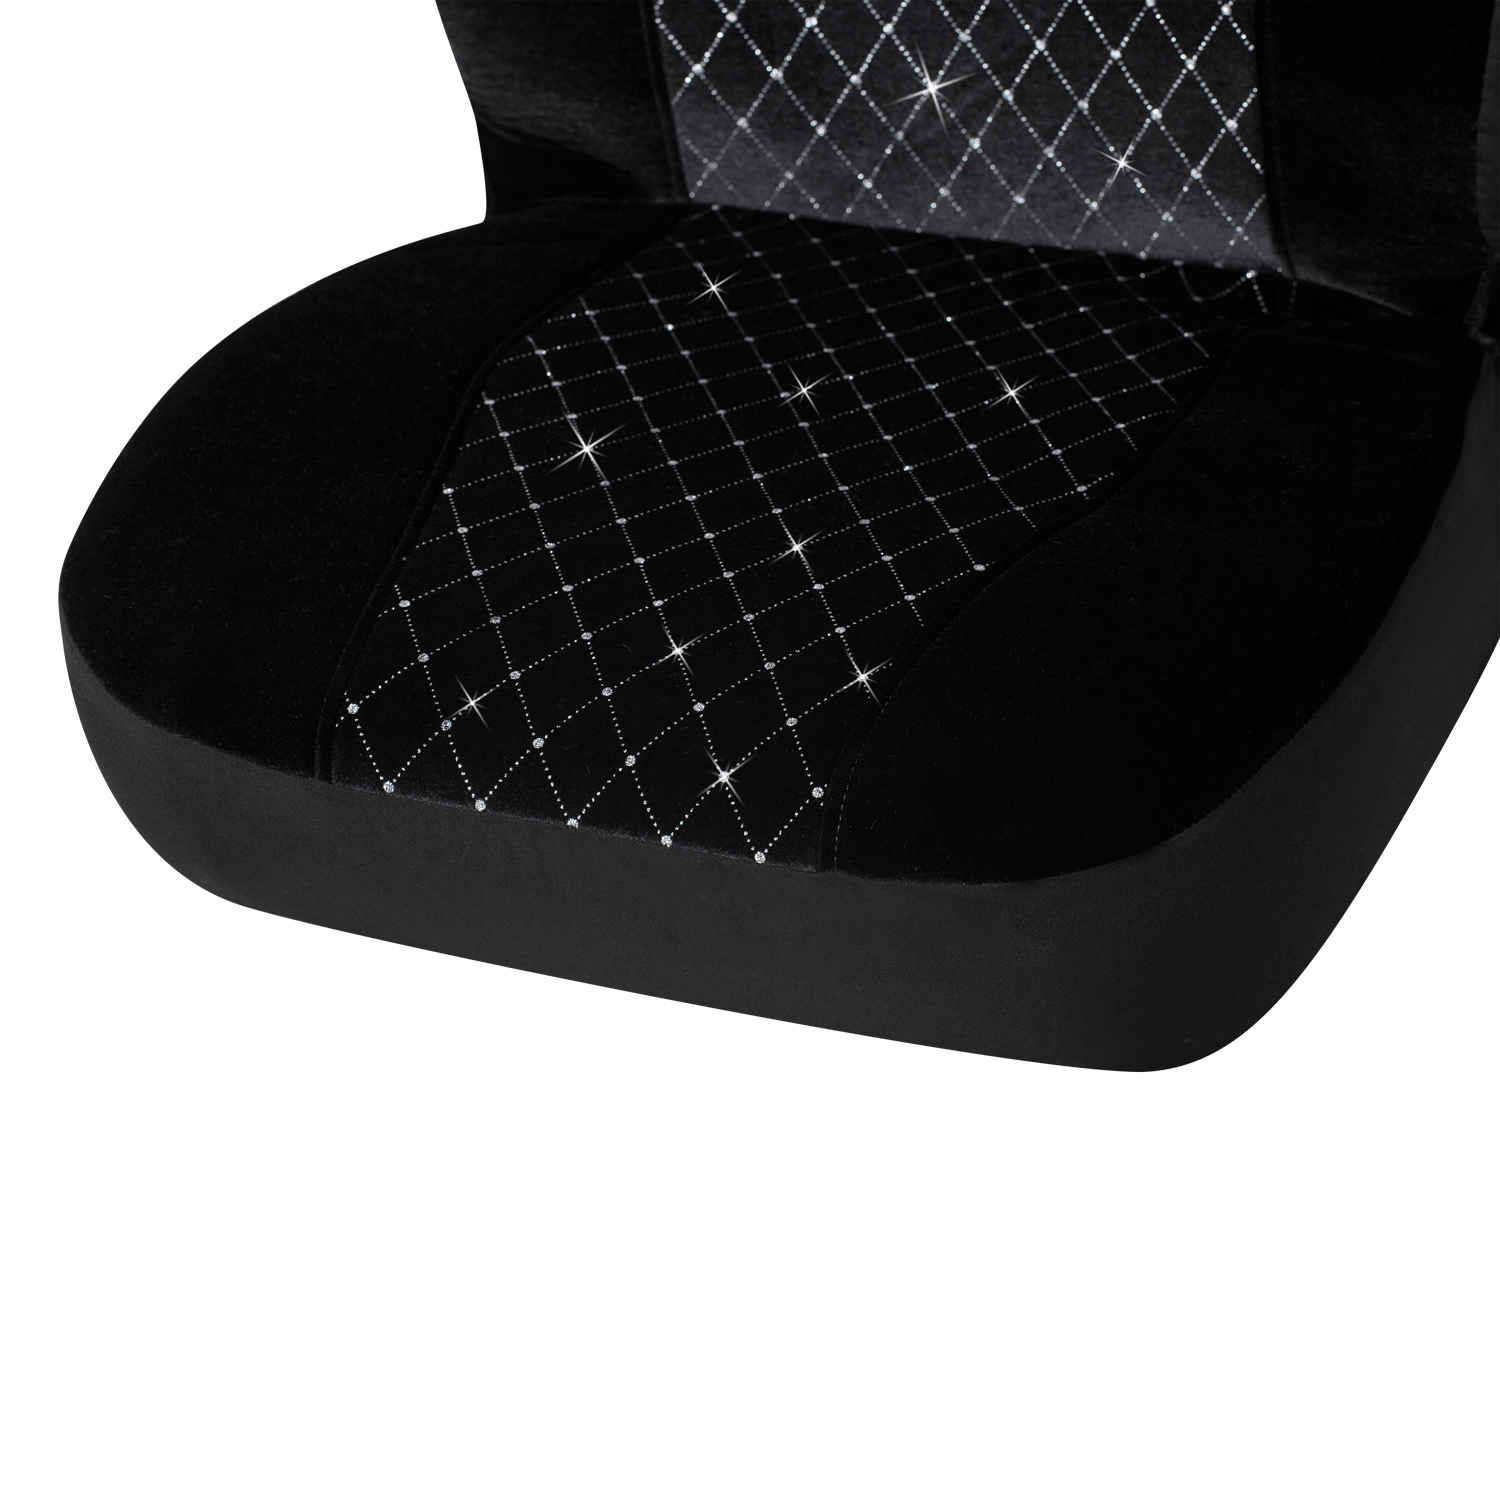 34 Pieces Bling Velvet Fabric Car Seat Covers Full Set Black Bling